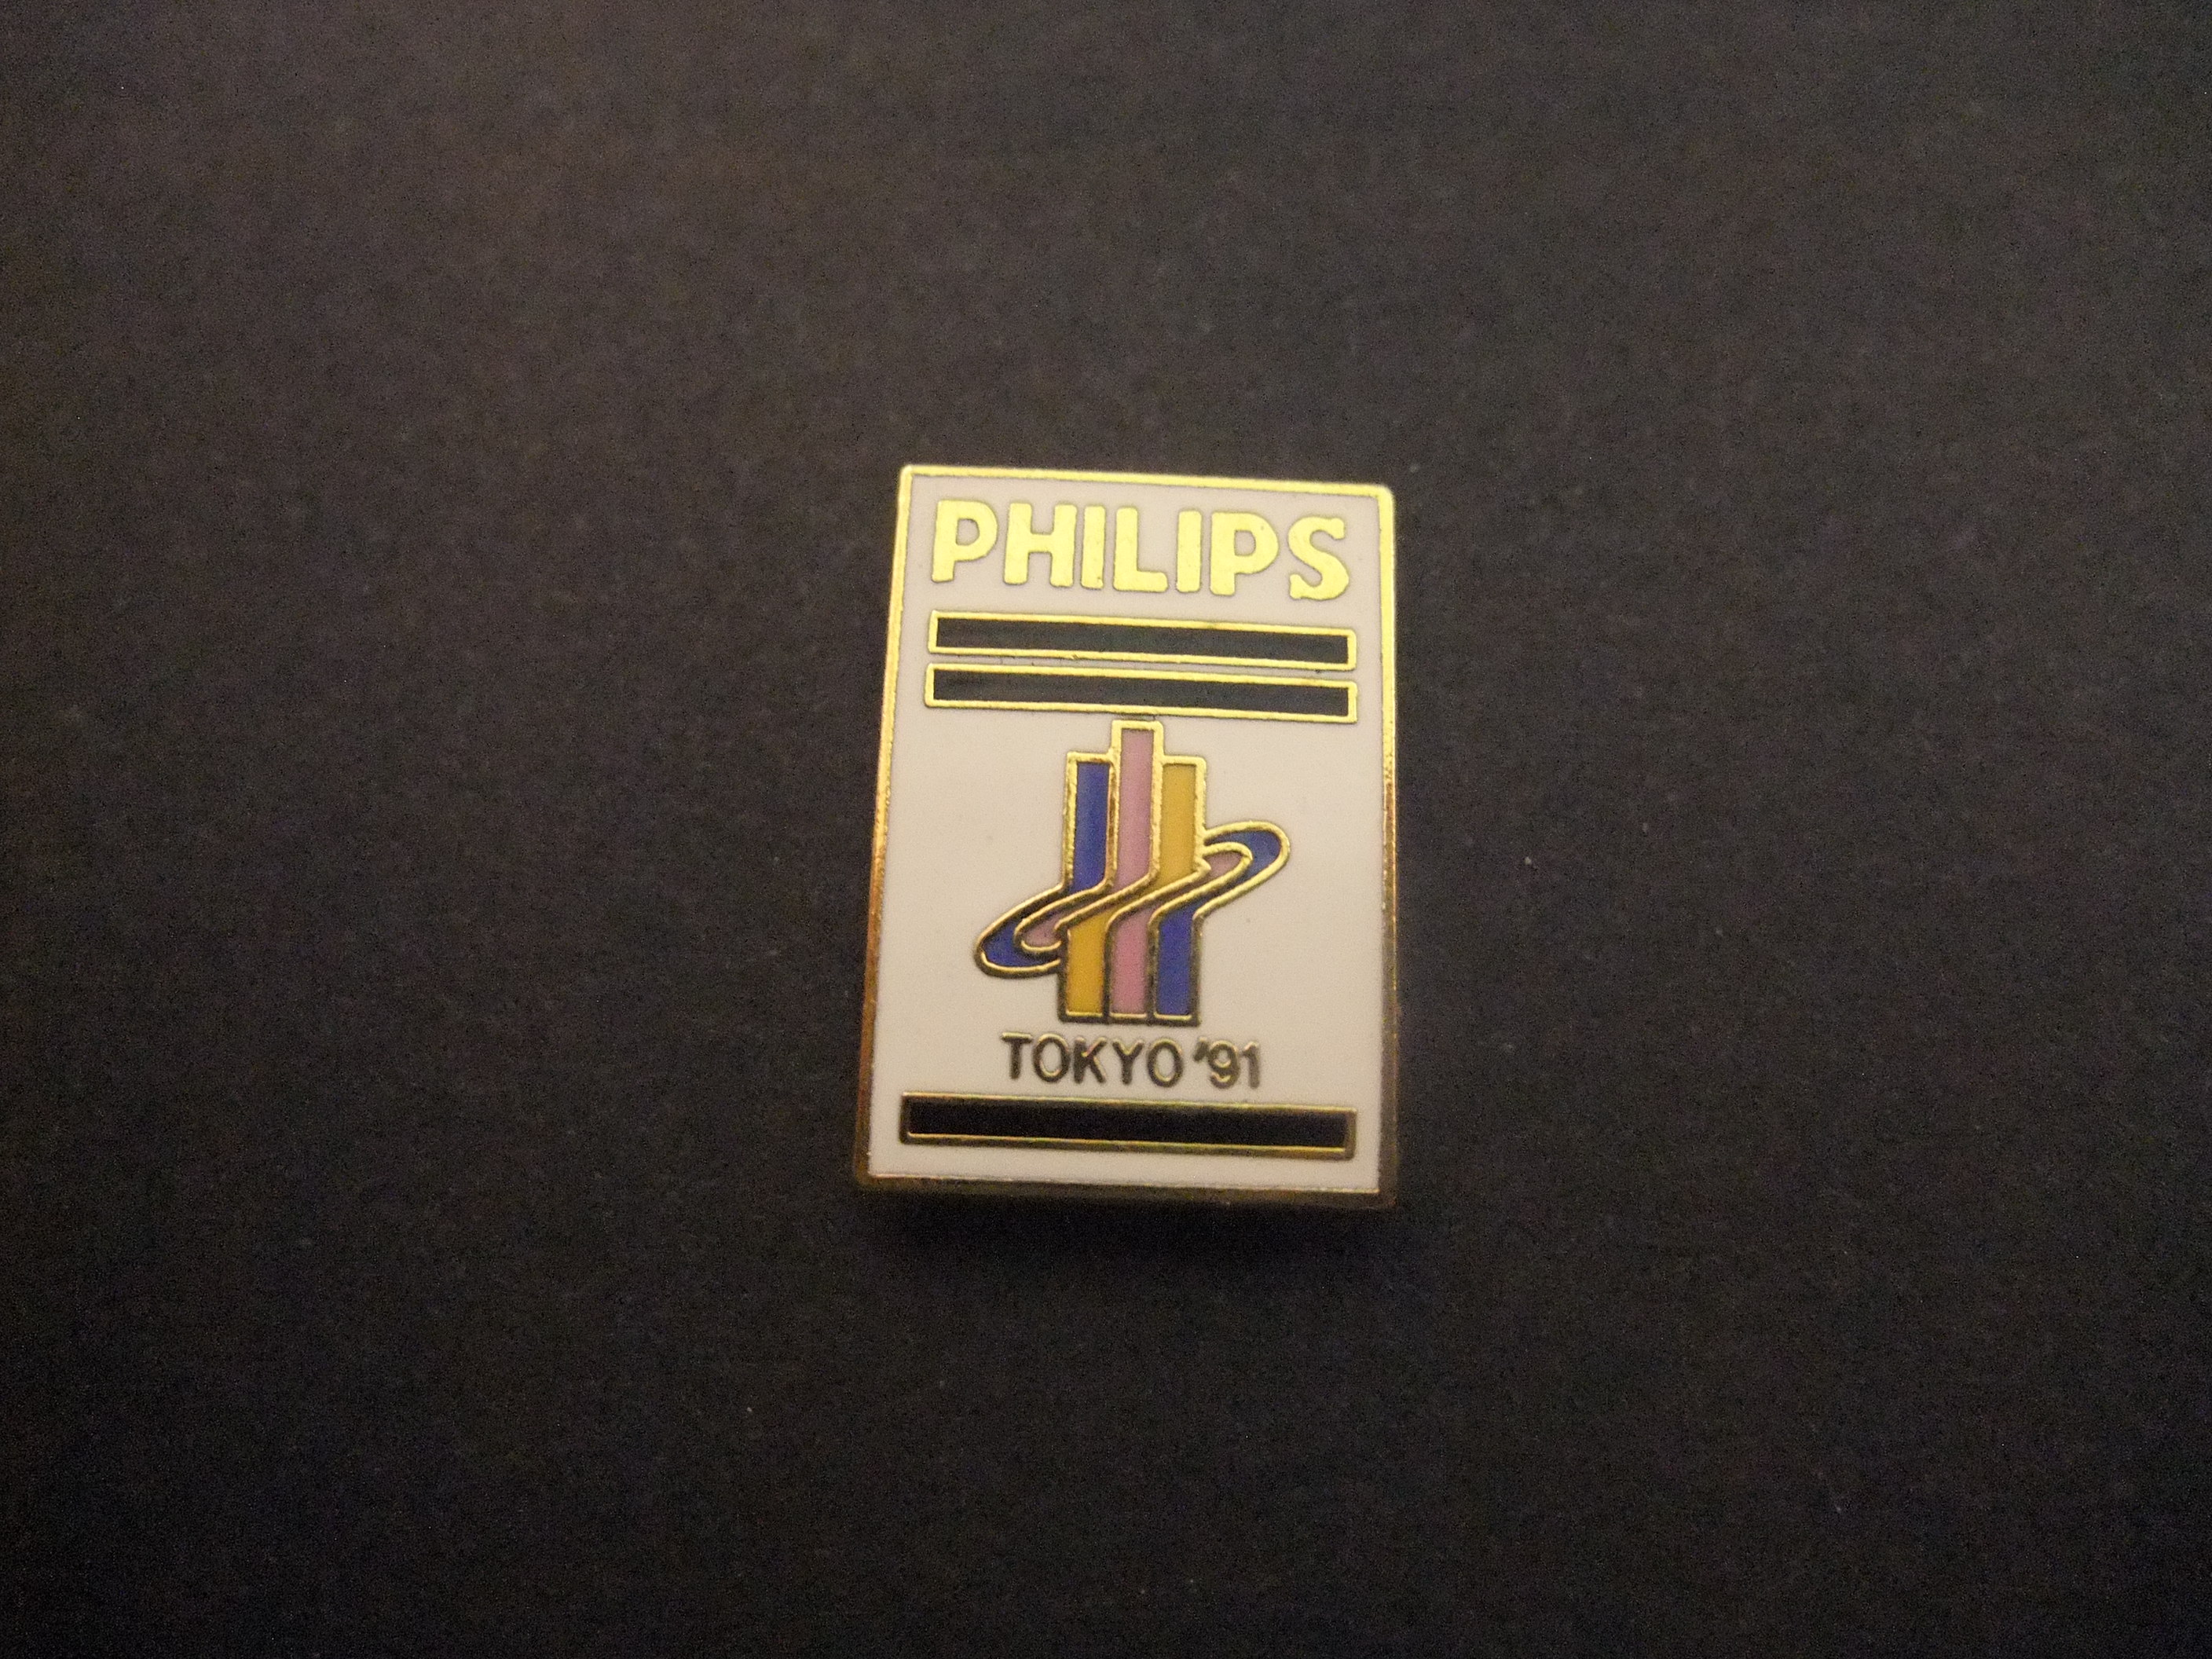 Wereldkampioenschappen atletiek 1991Tokyo sponsor Philips